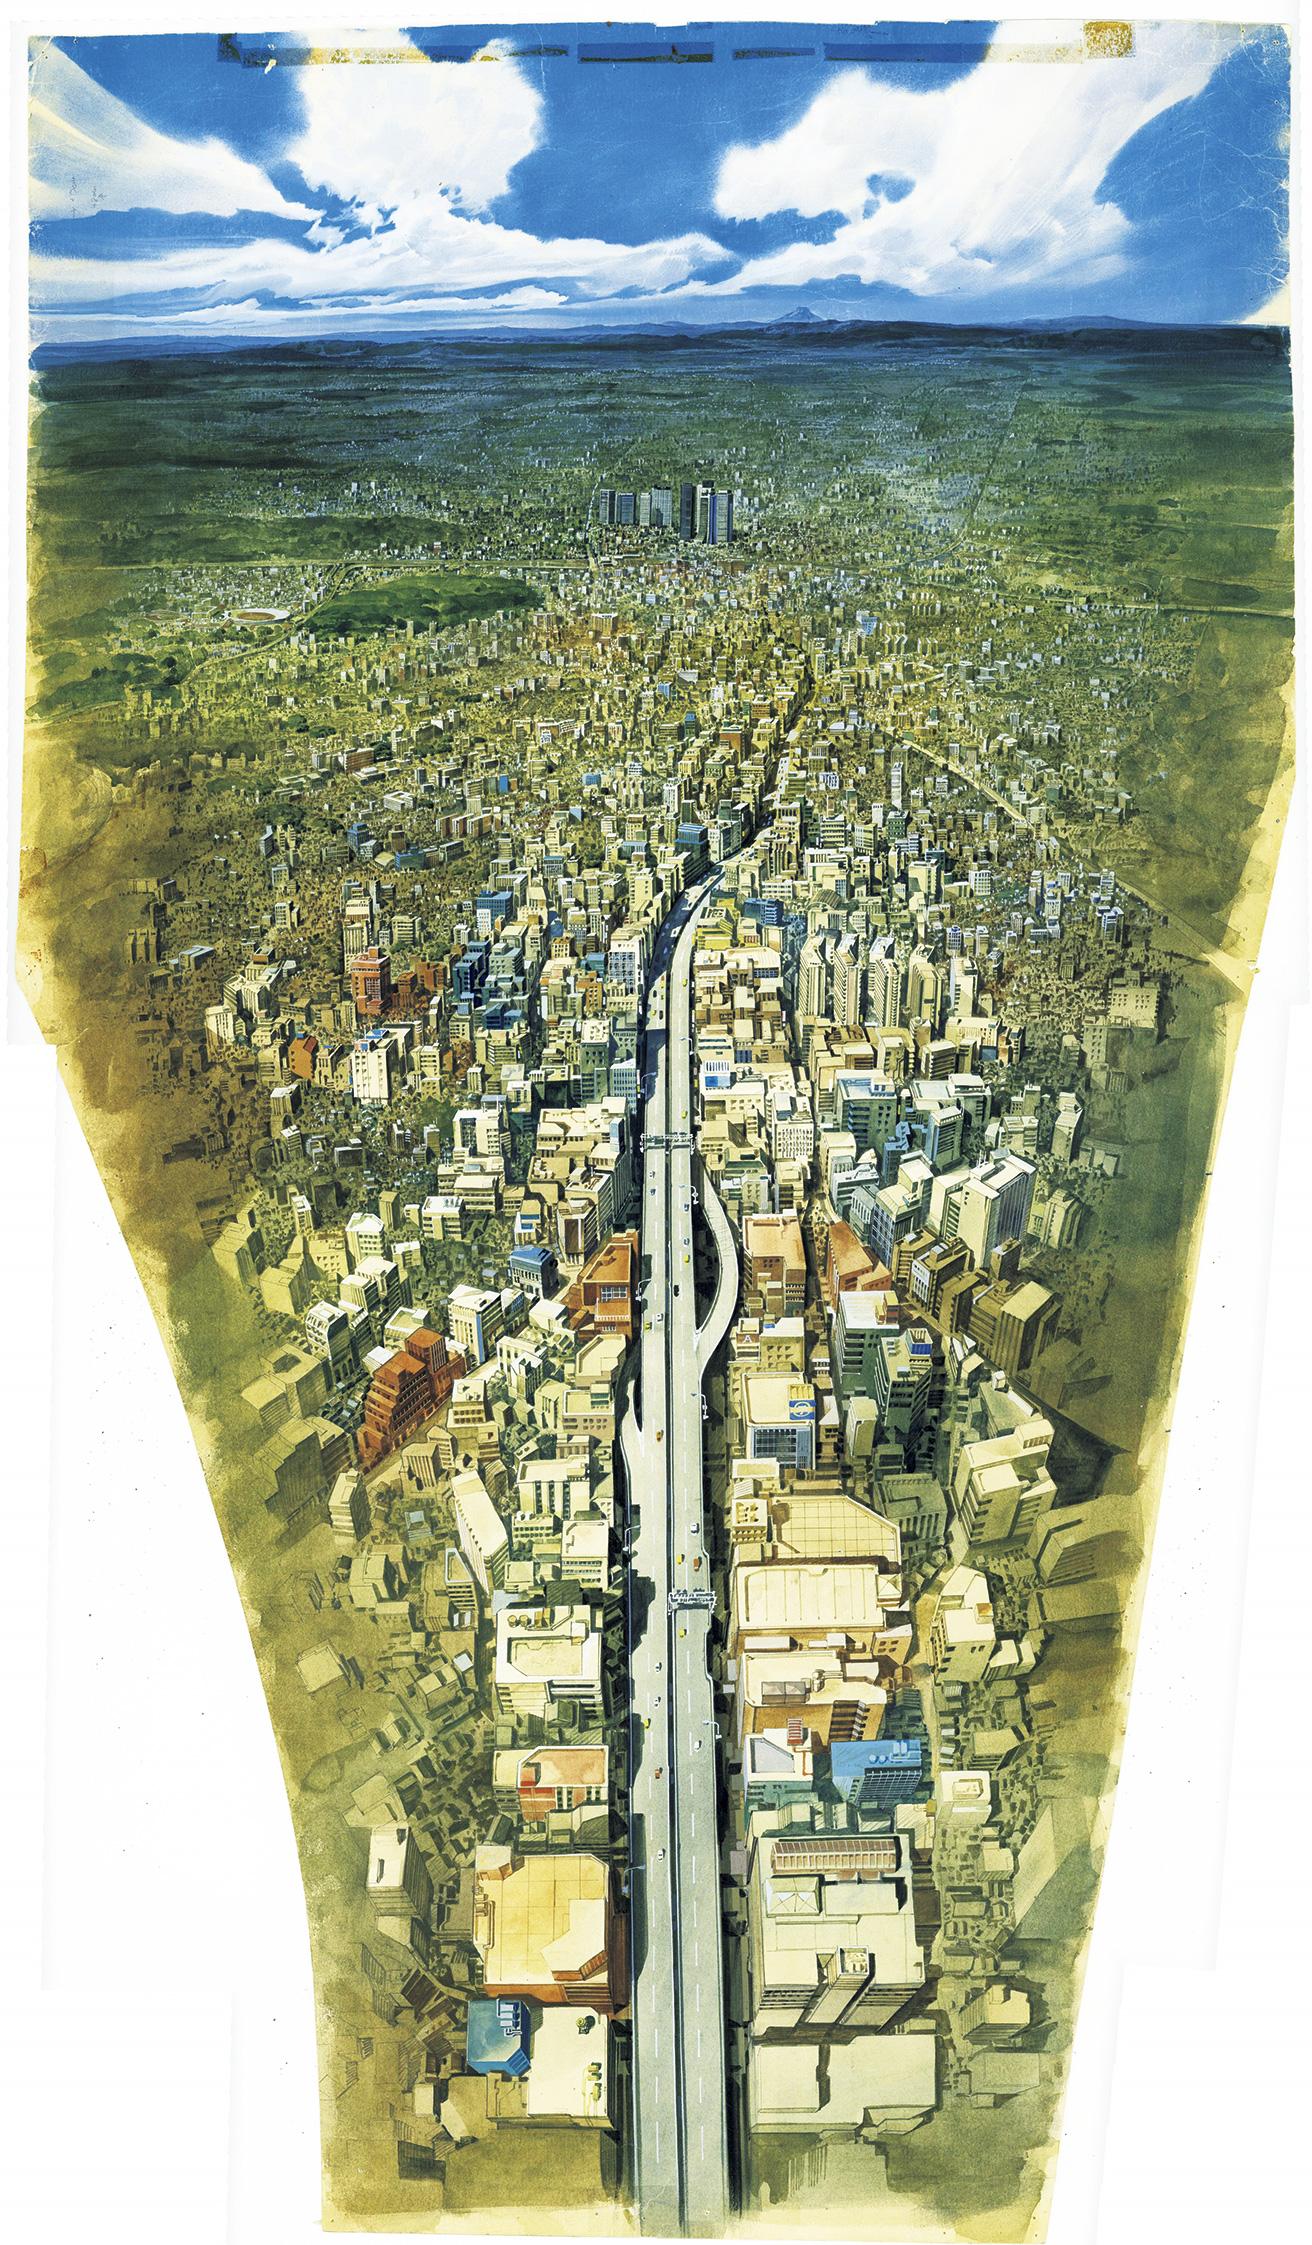 『AKIRA』 1988年公開。監督：大友克洋／美術監督：水谷利春。小林プロダクション美術部で『ルパン三世 カリオストロの城』などを担当した水谷が、丹下健三「東京計画1960」との類縁性も指摘される2019年「ネオ東京」のディストピアを再現。